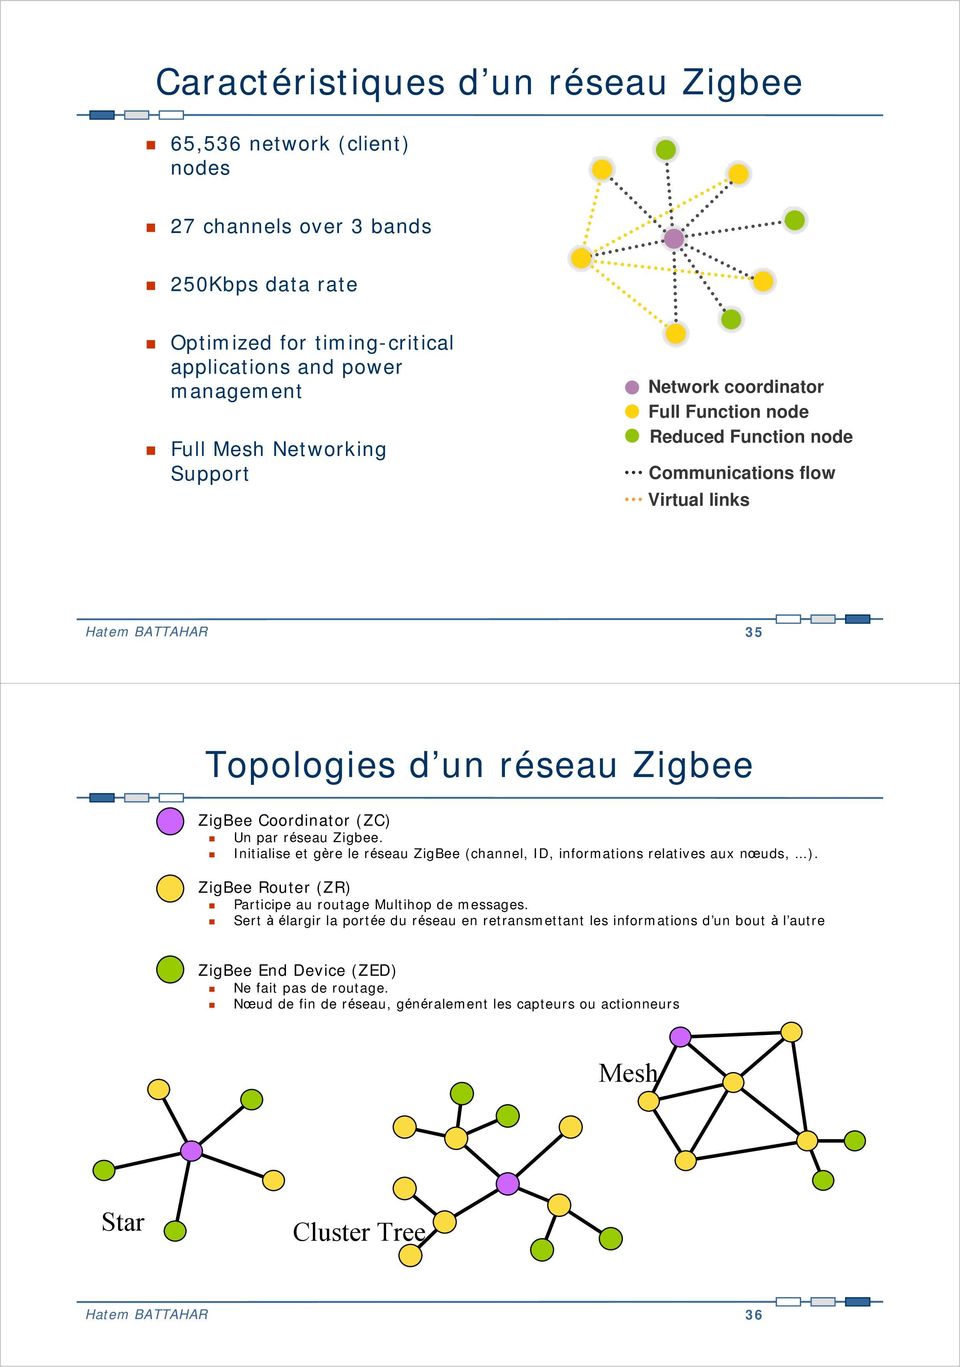 Zigbee. Initialise et gère le réseau ZigBee (channel, ID, informations relatives aux nœuds, ). ZigBee Router (ZR) Participe au routage Multihop de messages.